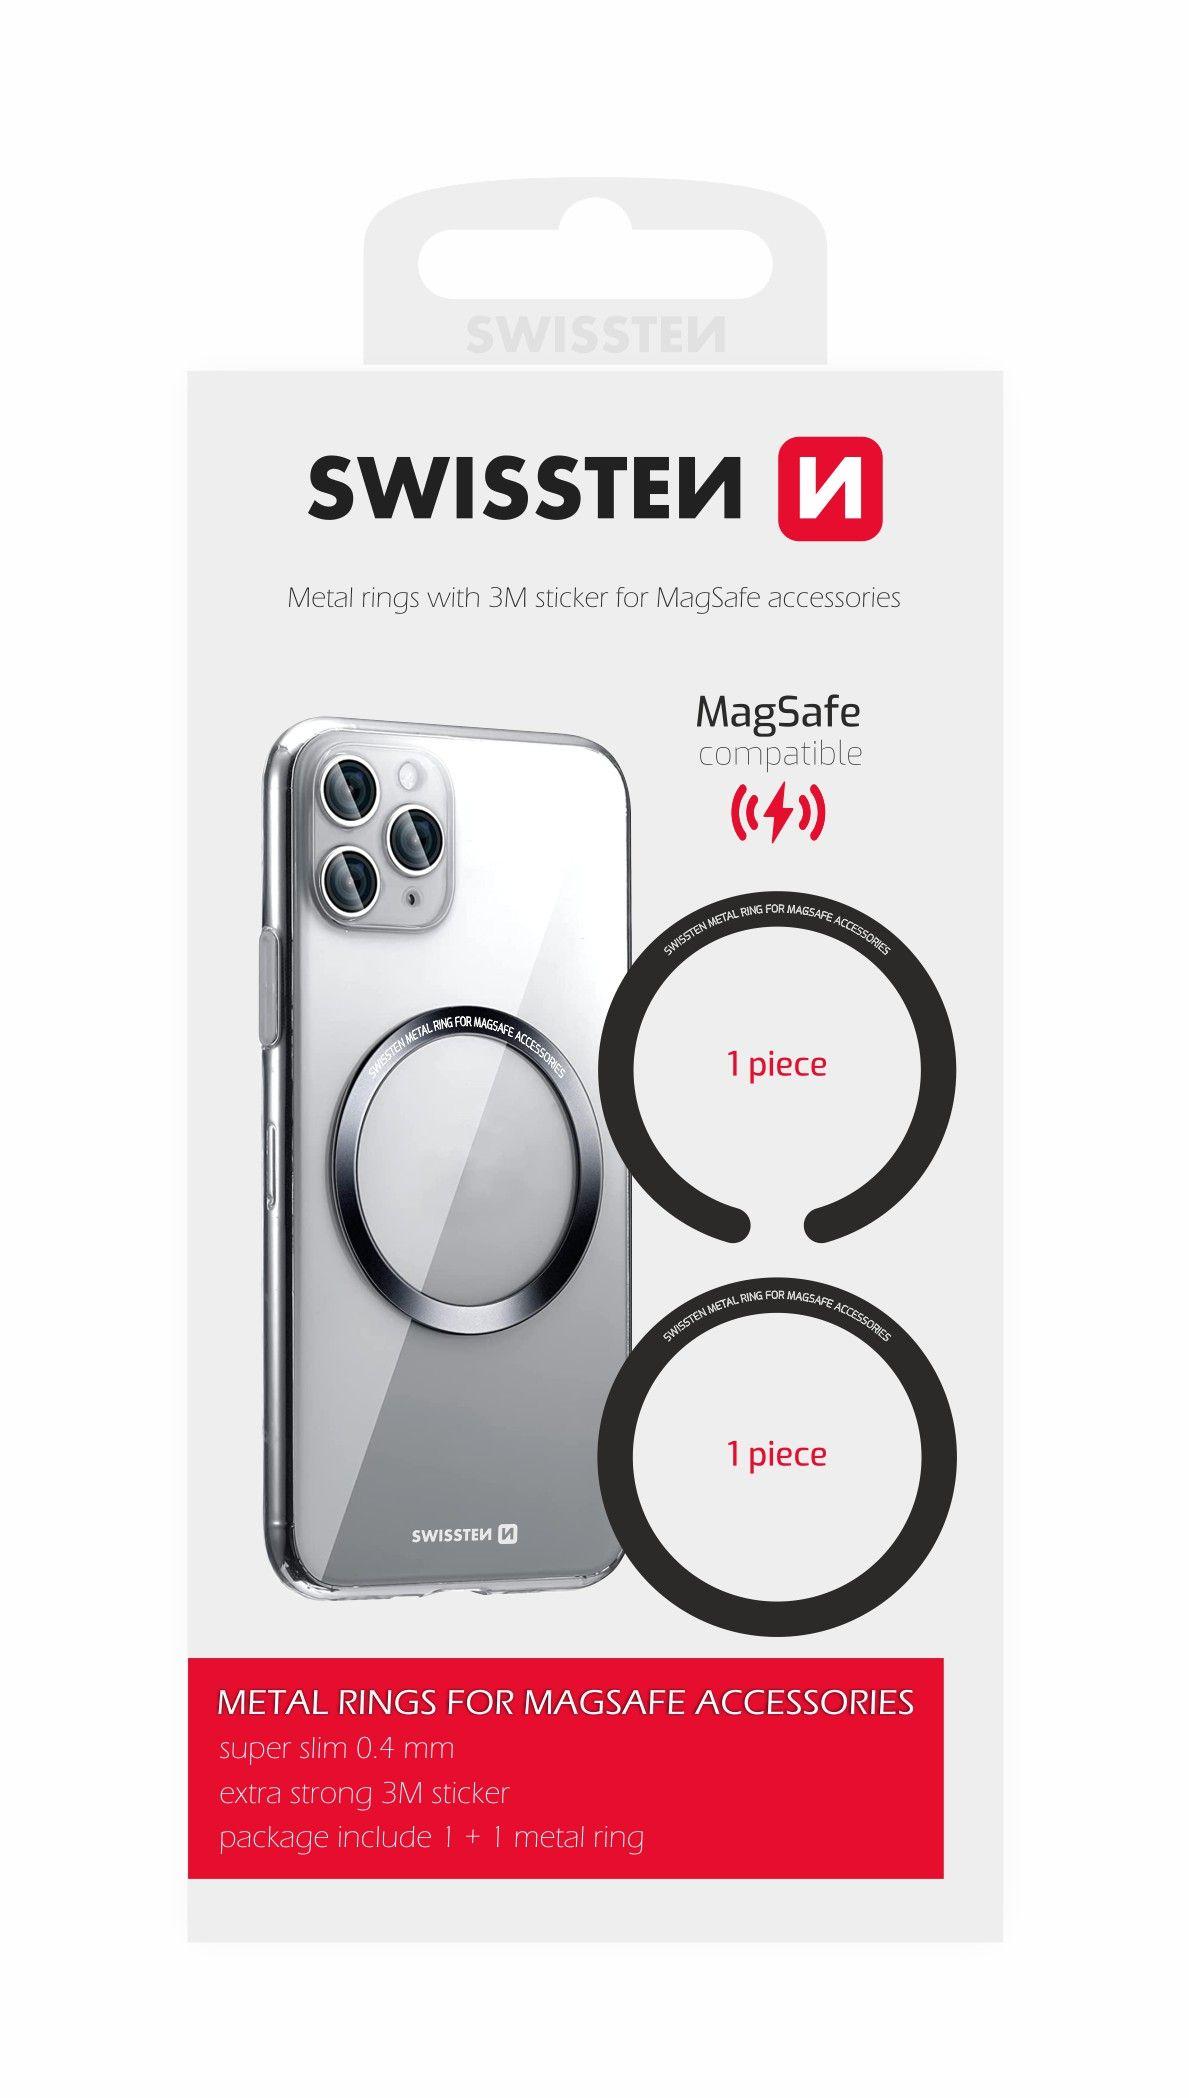 Swissten set kovových podložek pro MagSafe pouzdra